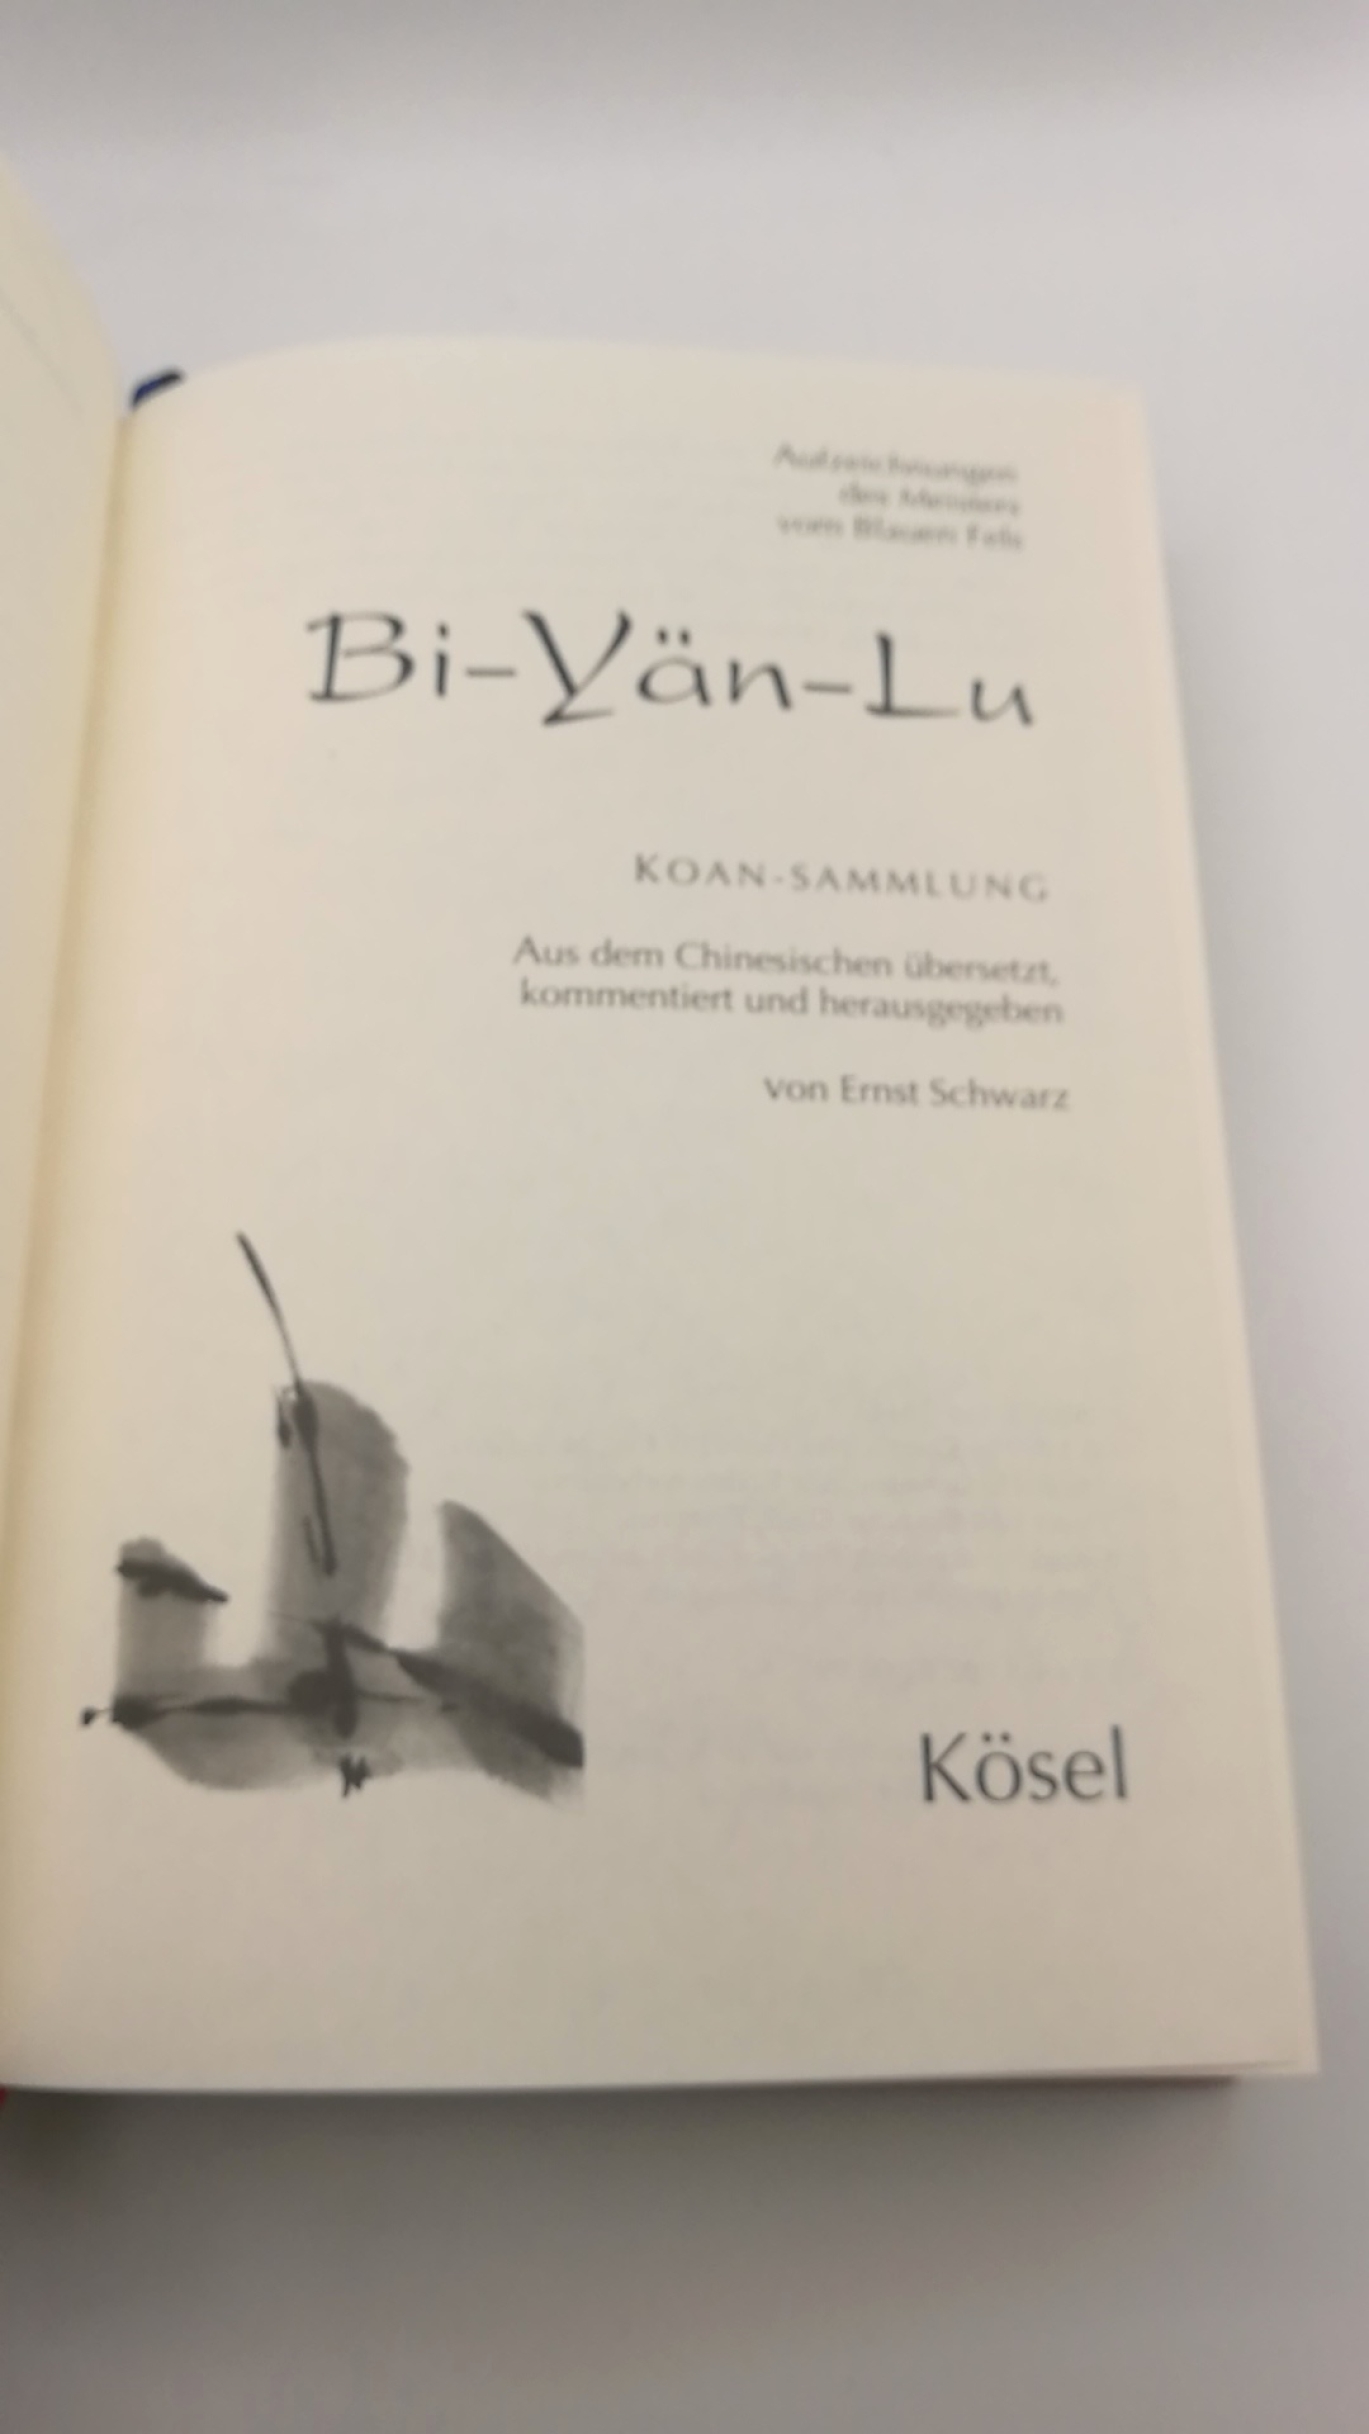 Schwarz, Ernst (Herausgeber): Bi-yän-lu. Koan-Sammlung Aufzeichnungen des Meisters vom Blauen Fels